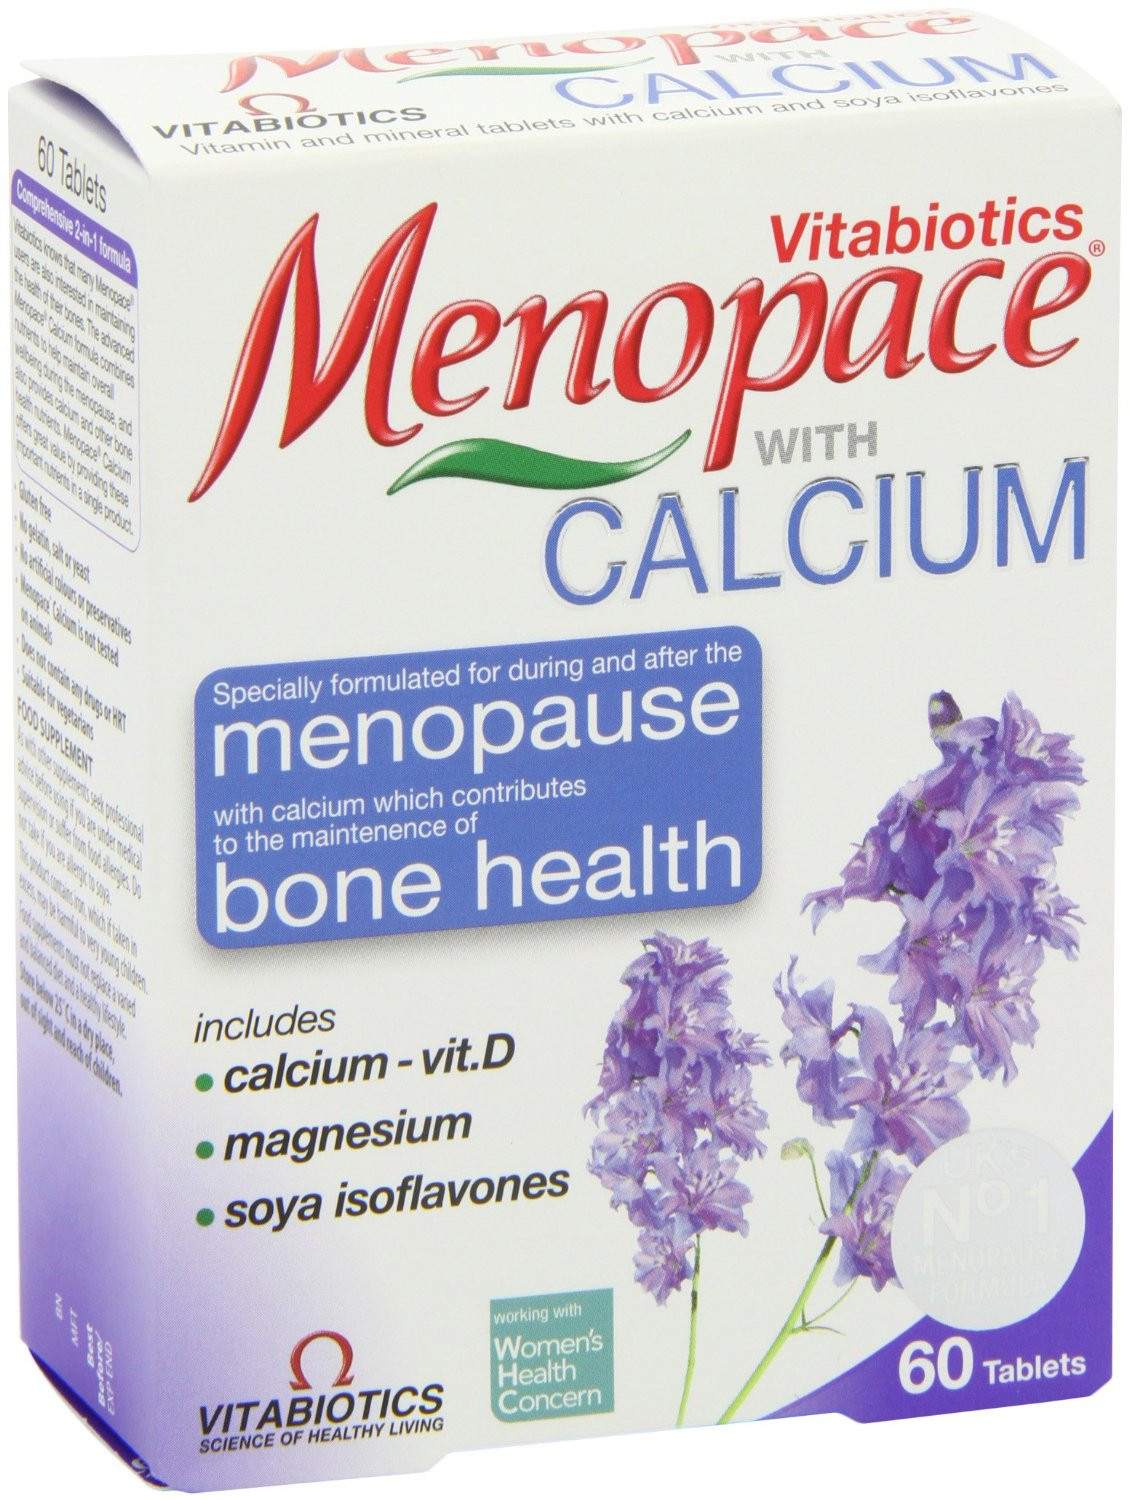 Vitabiotics Menopace with Calcium Tablets